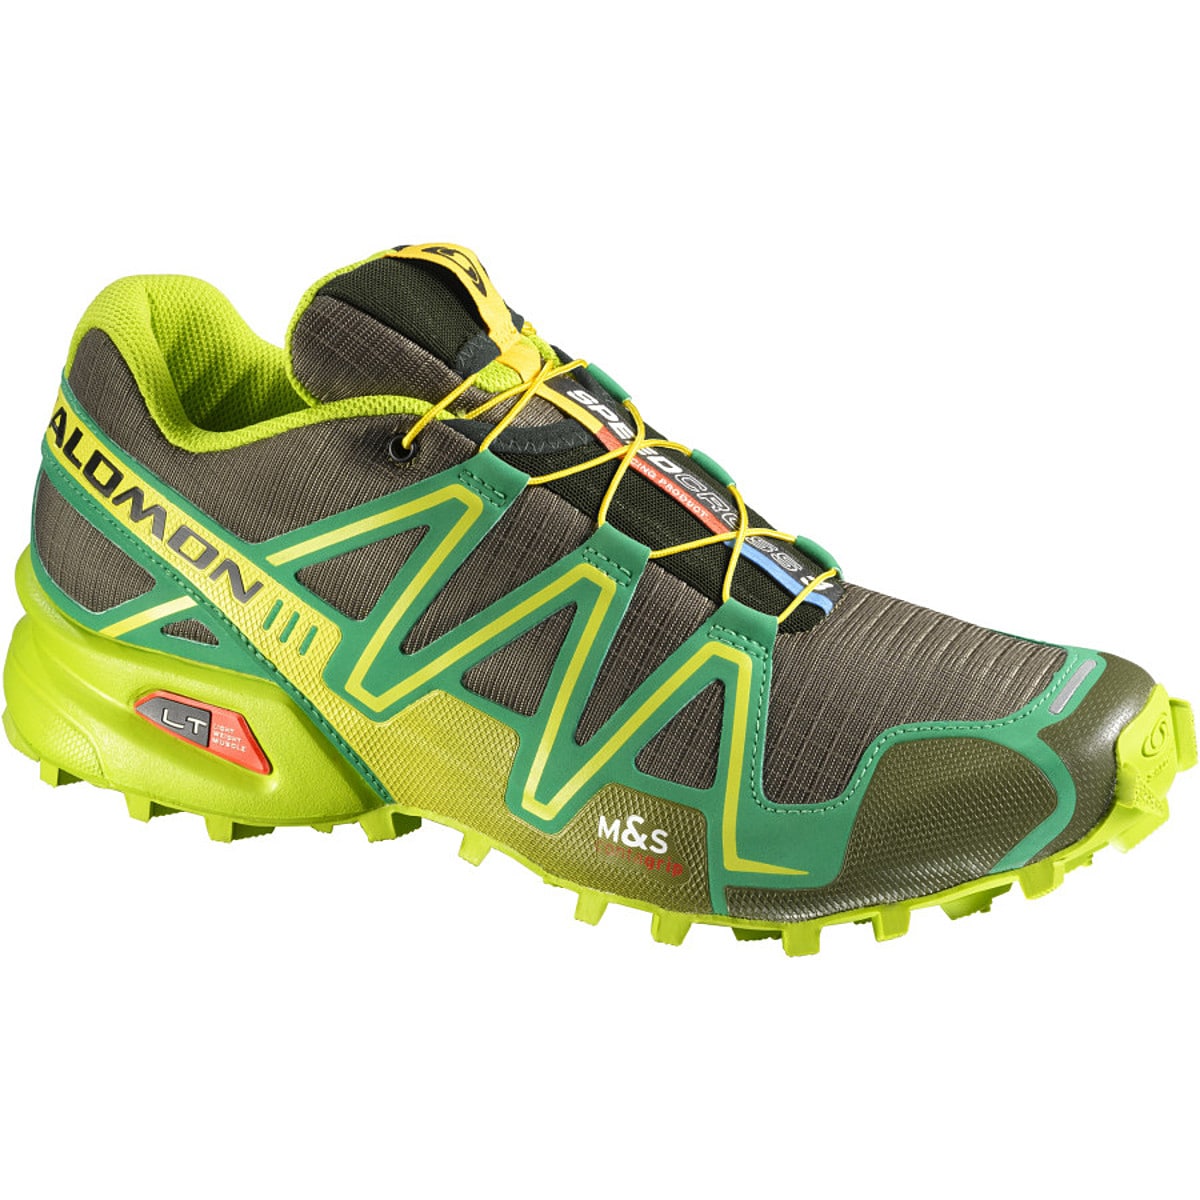 Salomon Speedcross 3 Trail Running Shoe - Men's - Men